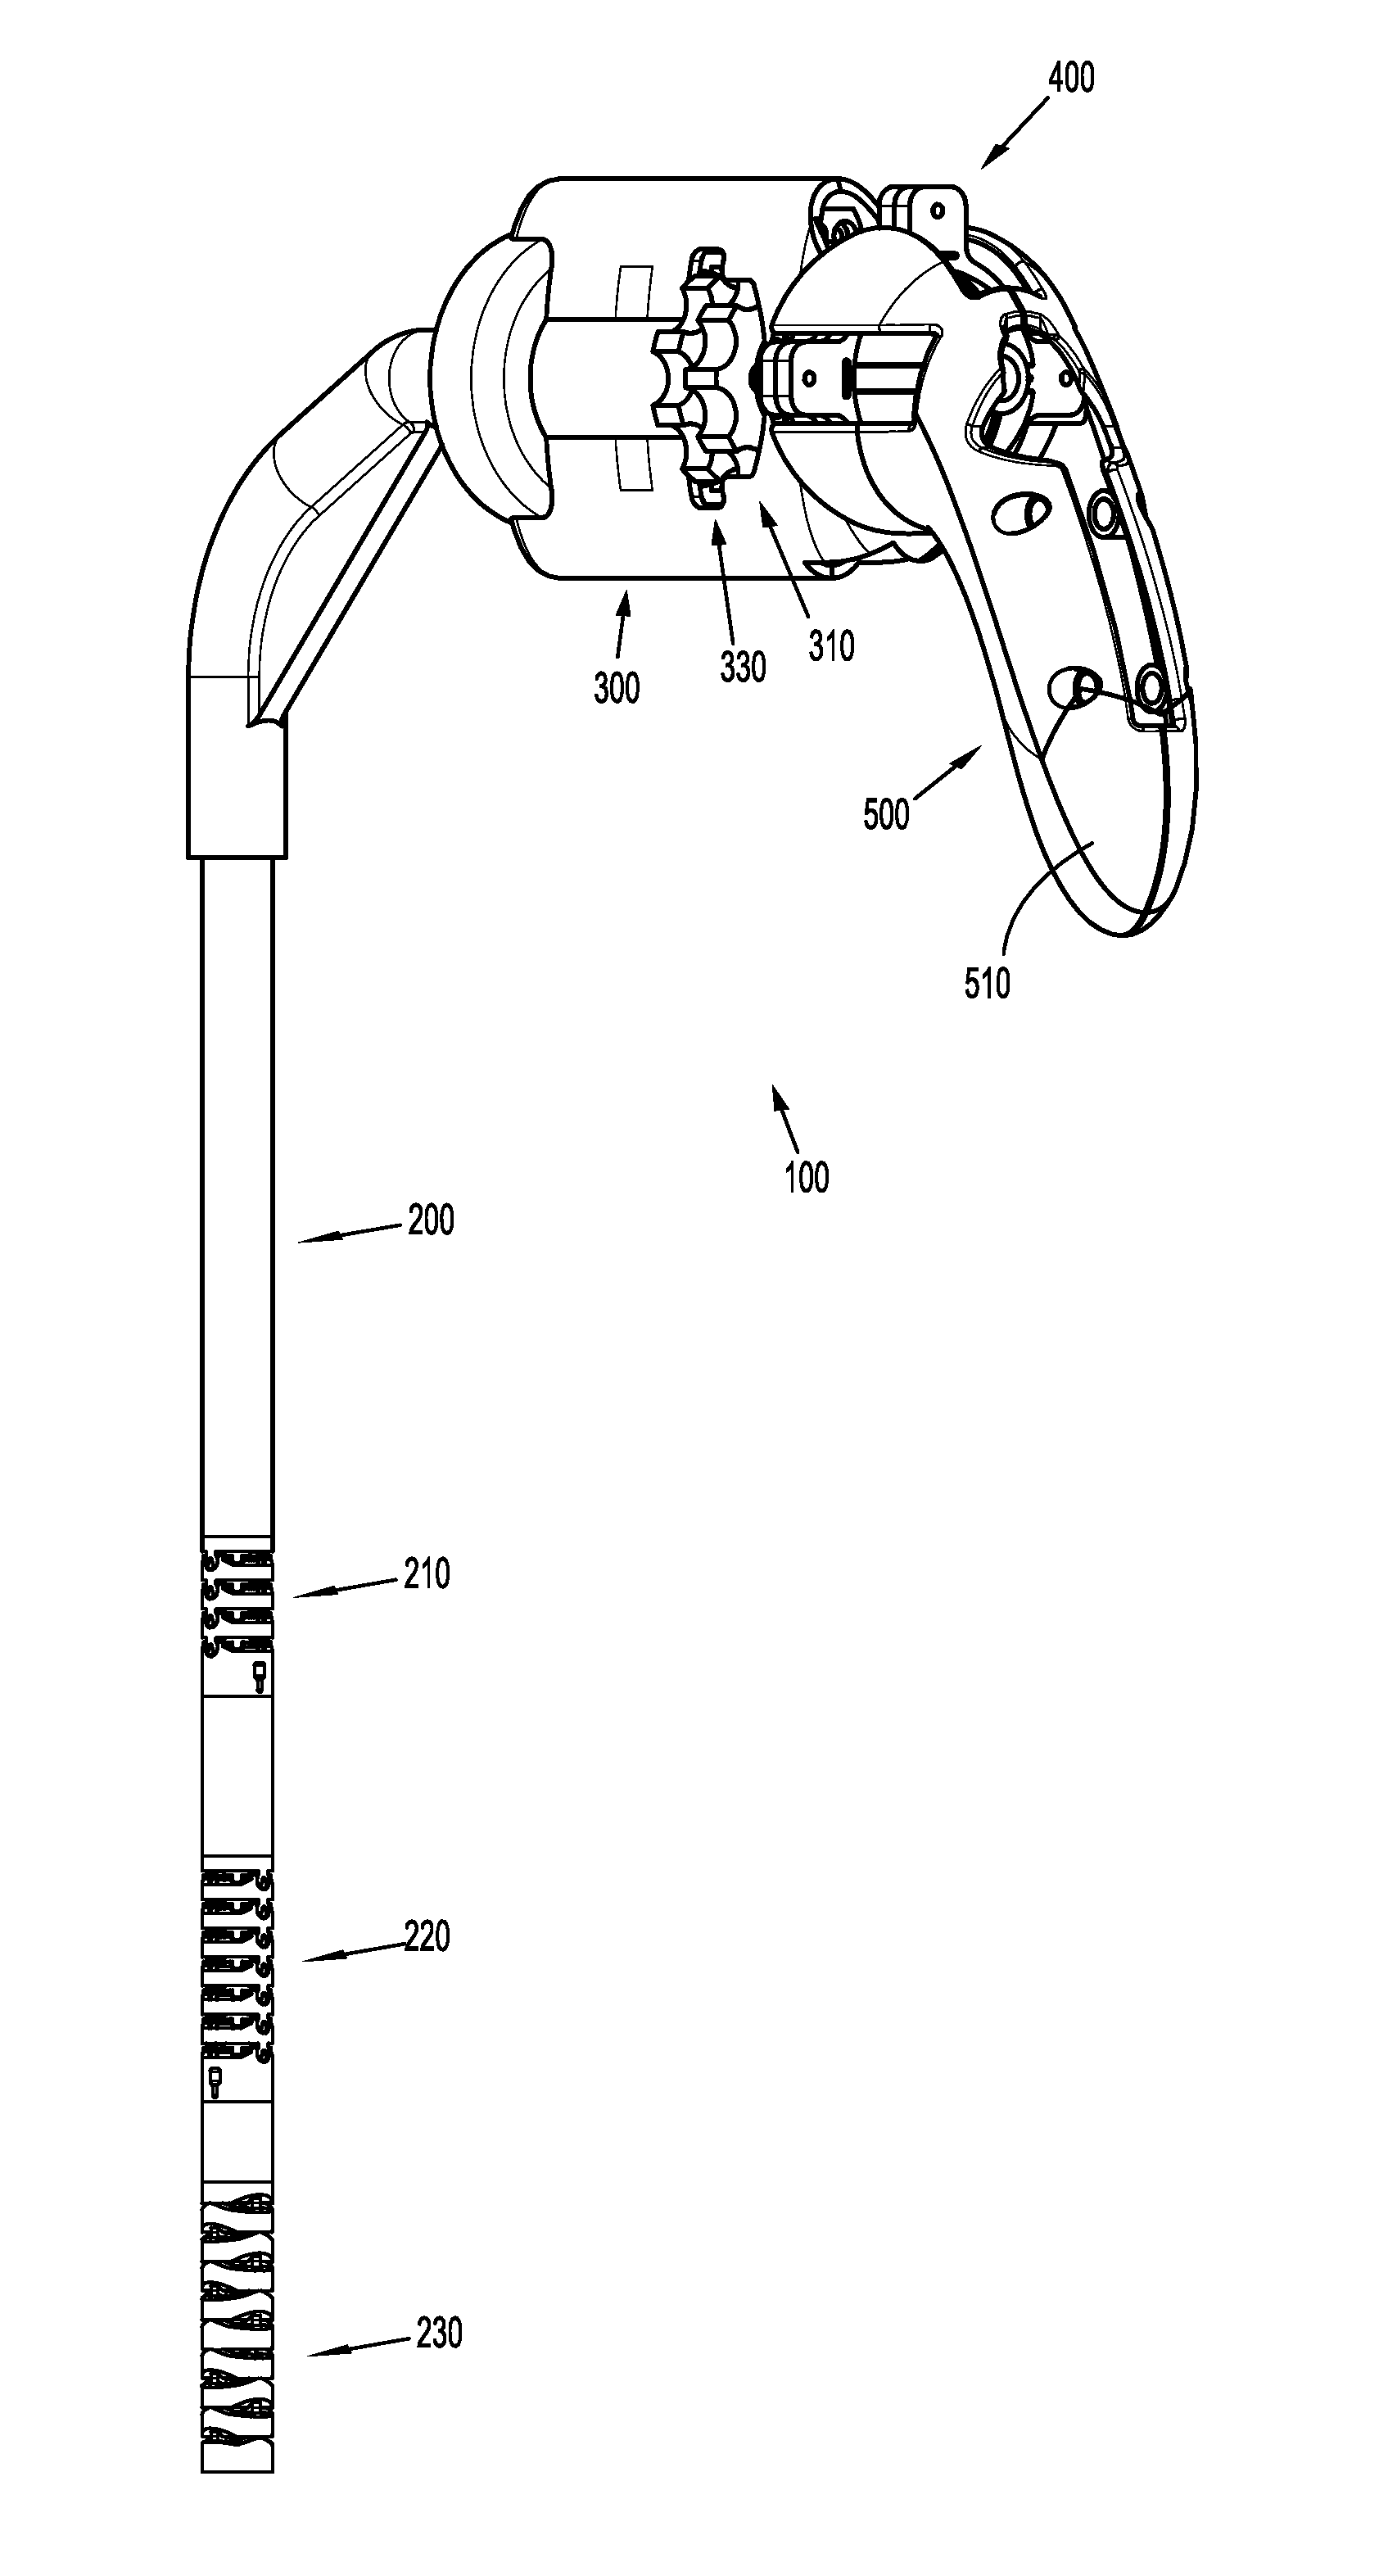 Articulation of Laparoscopic Instrument